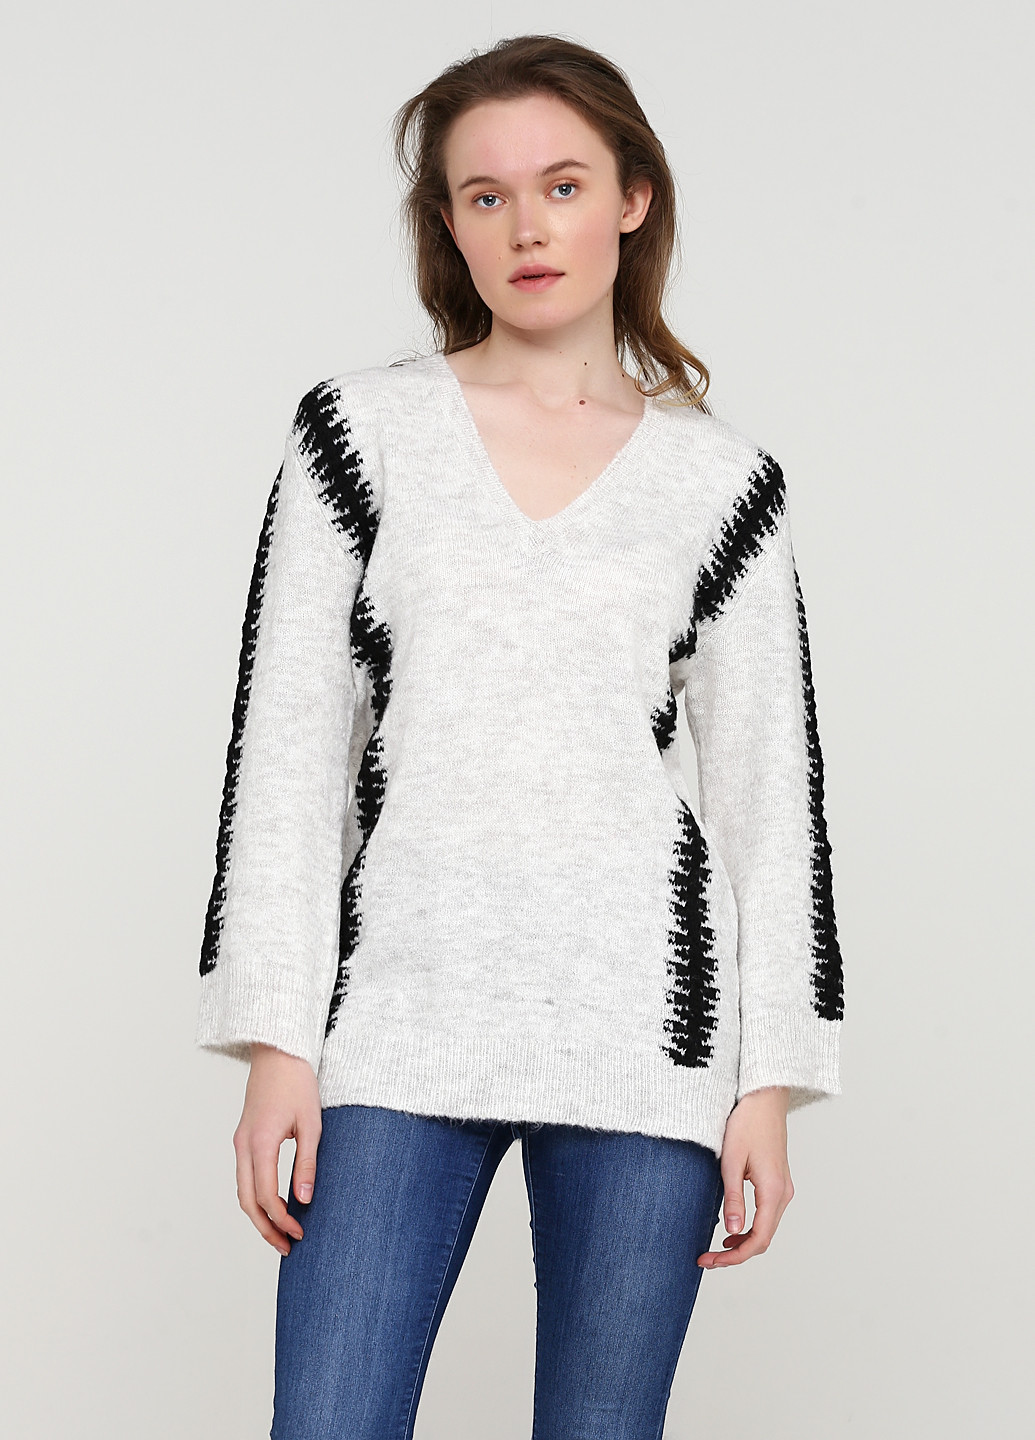 Светло-серый зимний пуловер пуловер Lauren Vidal